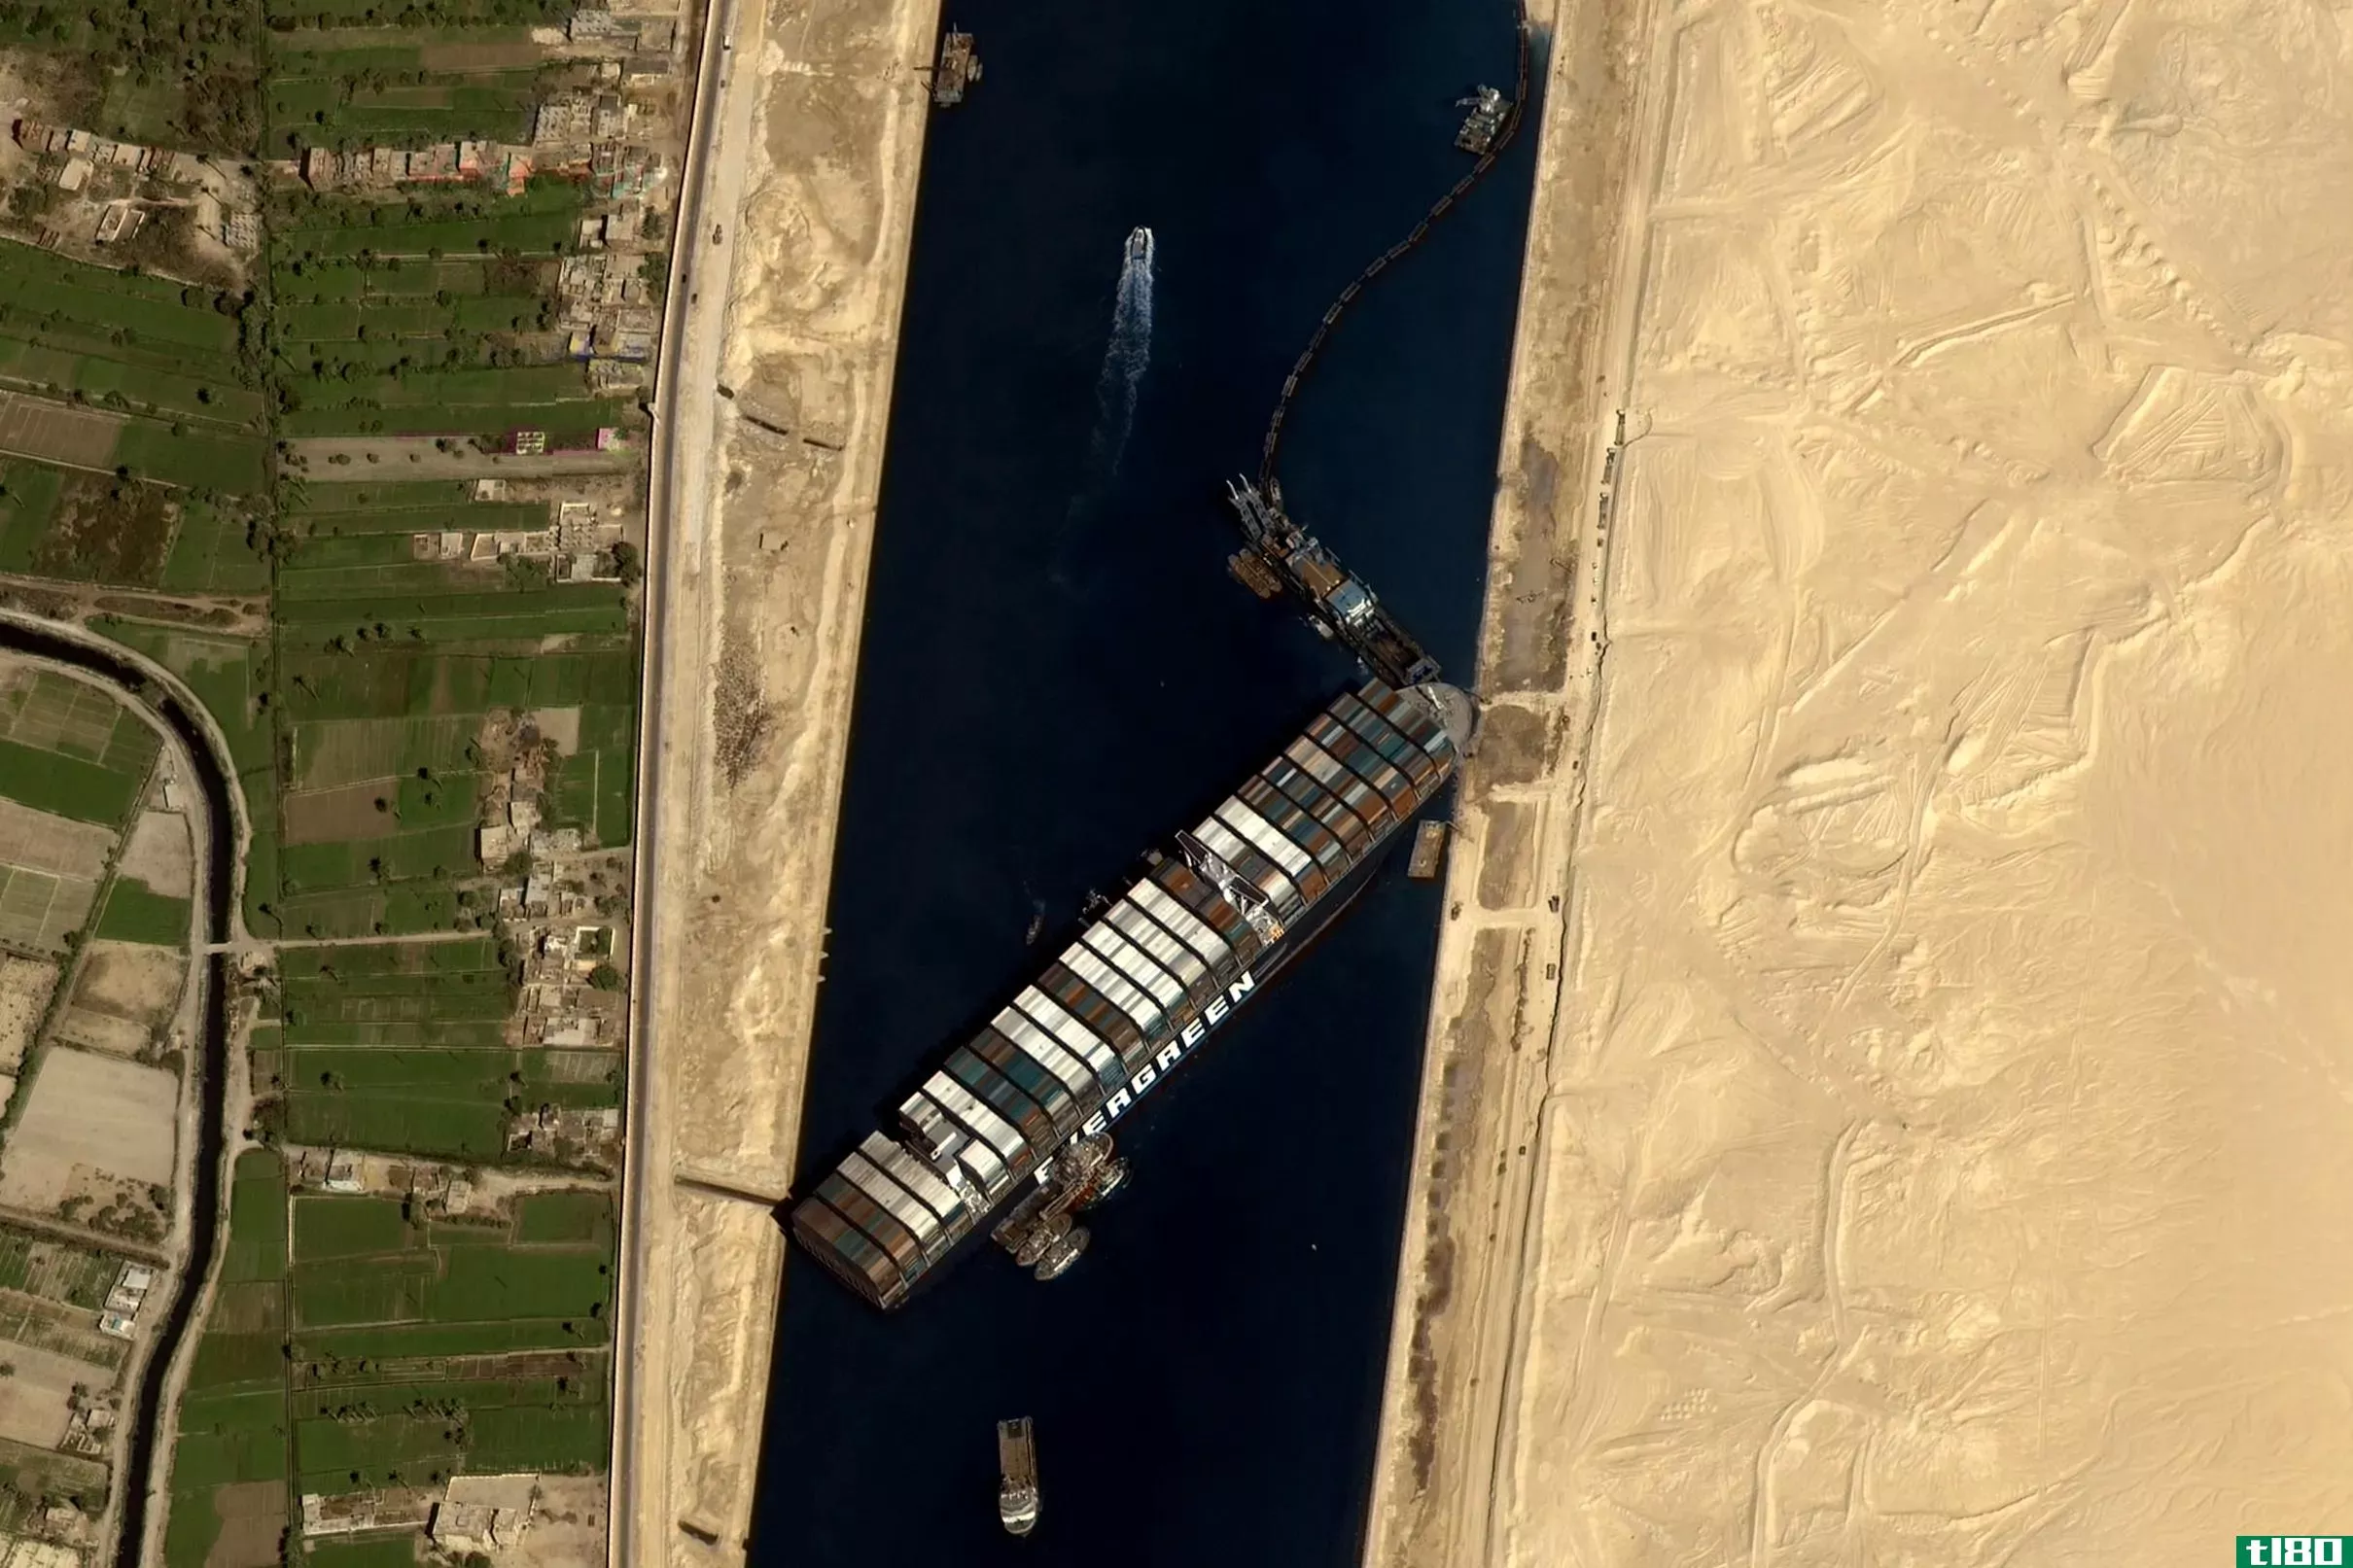 这个微软的飞行模拟模型的特点是货船卡在苏伊士运河